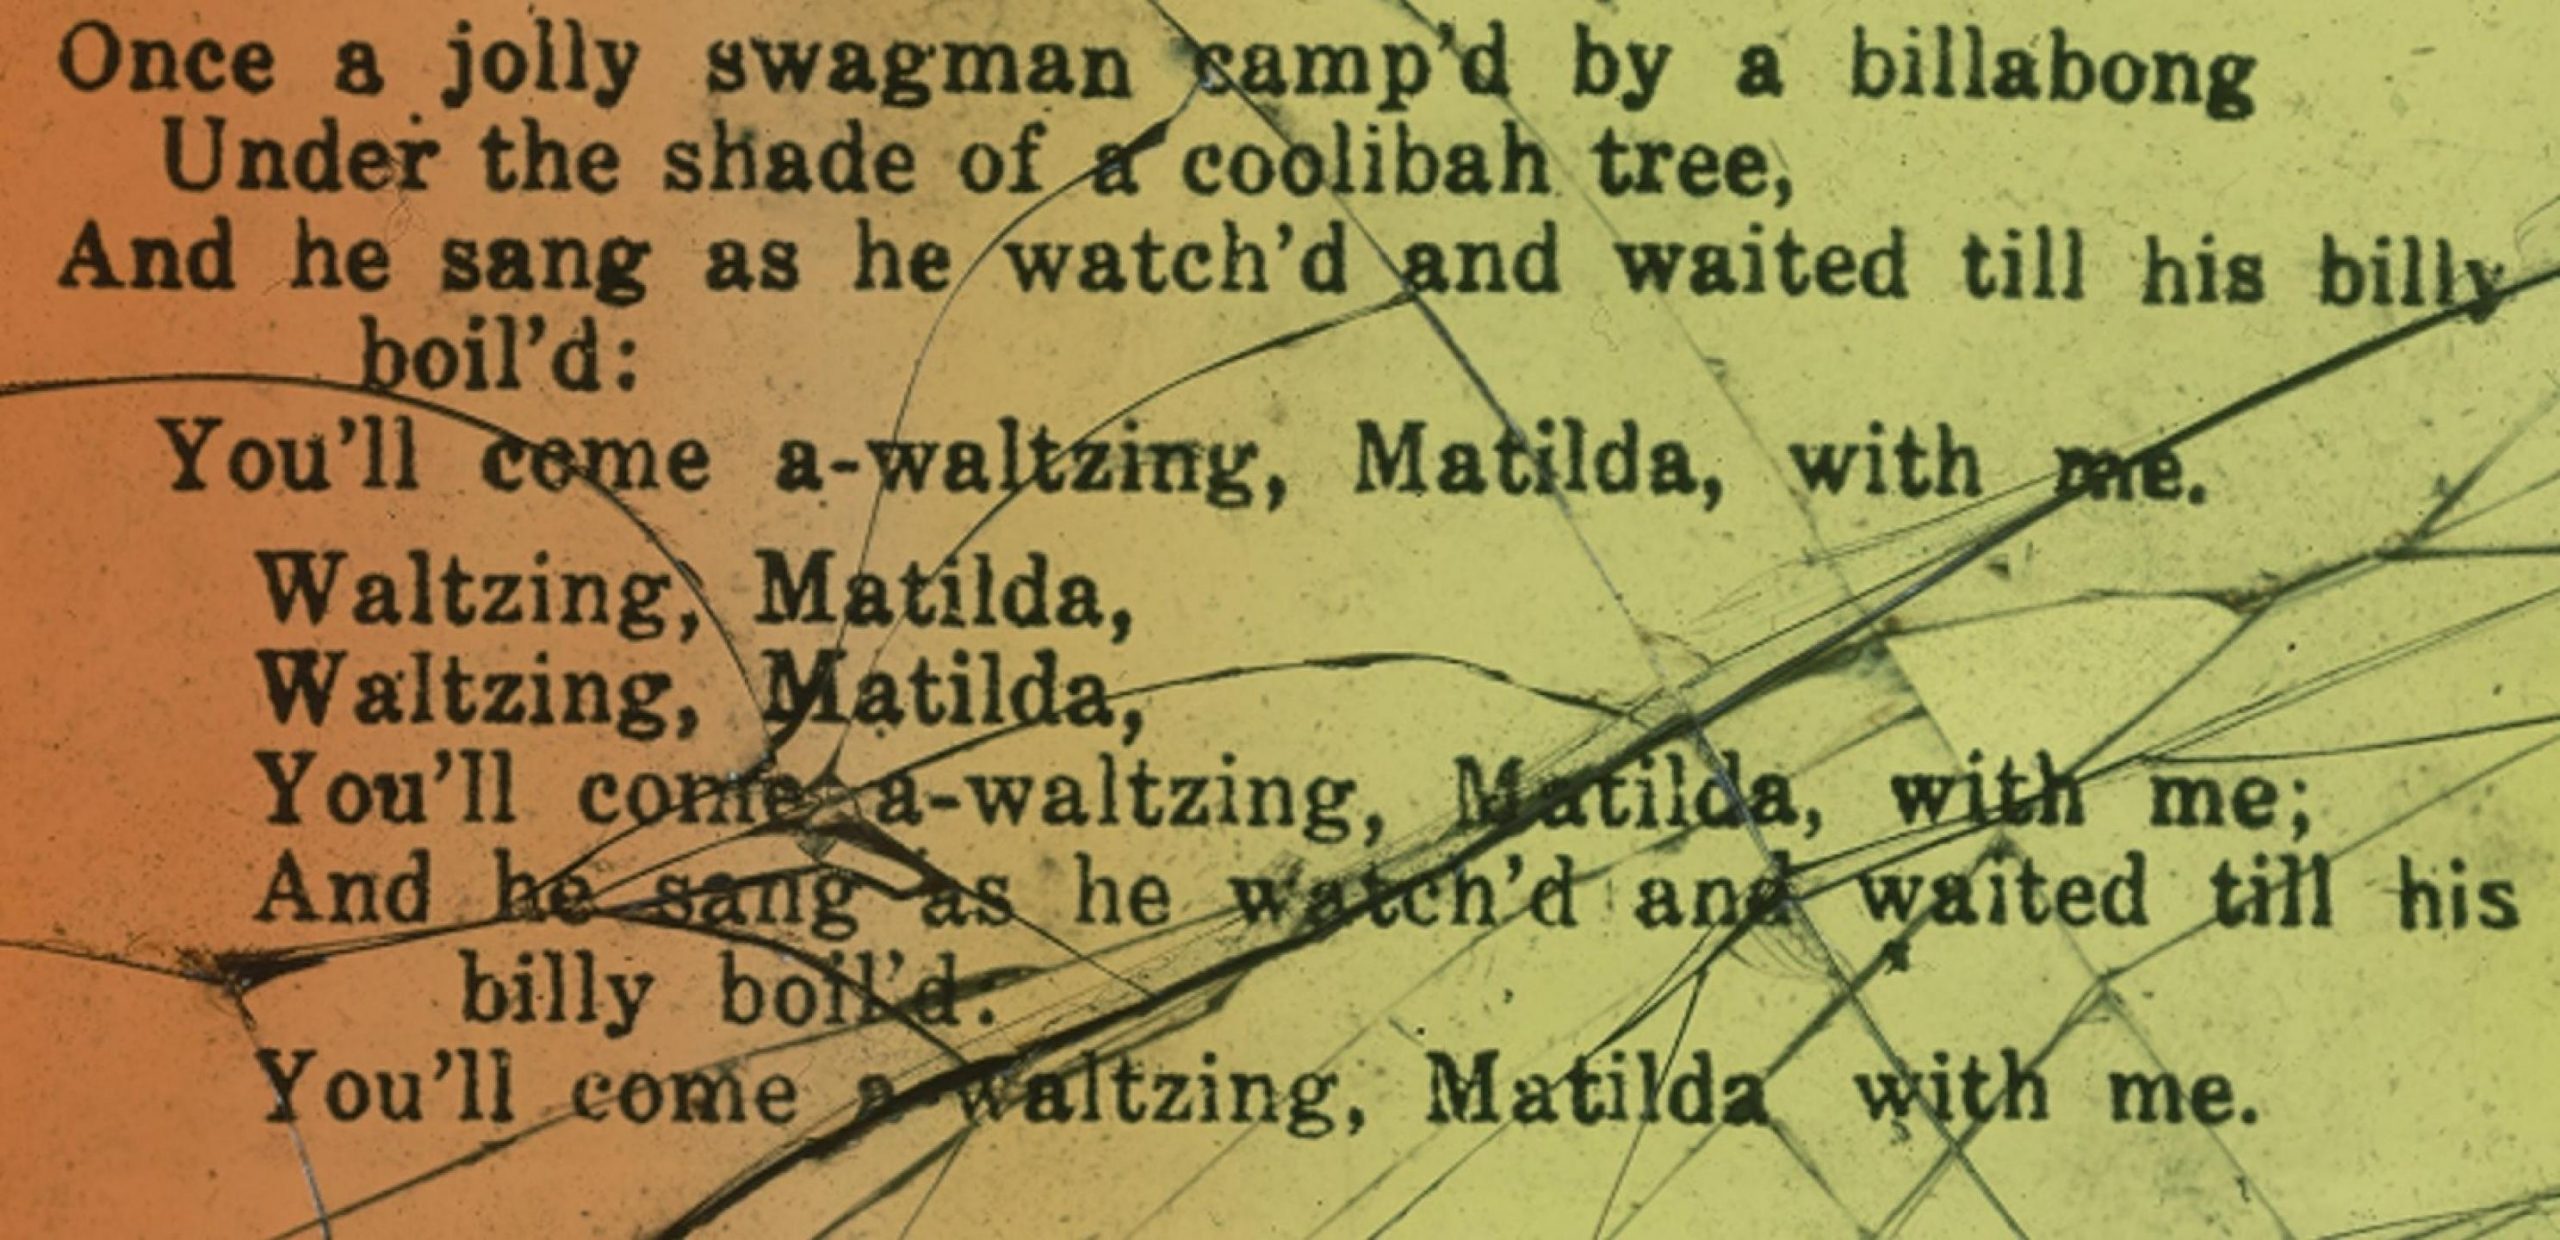 Waltzing Mathilda